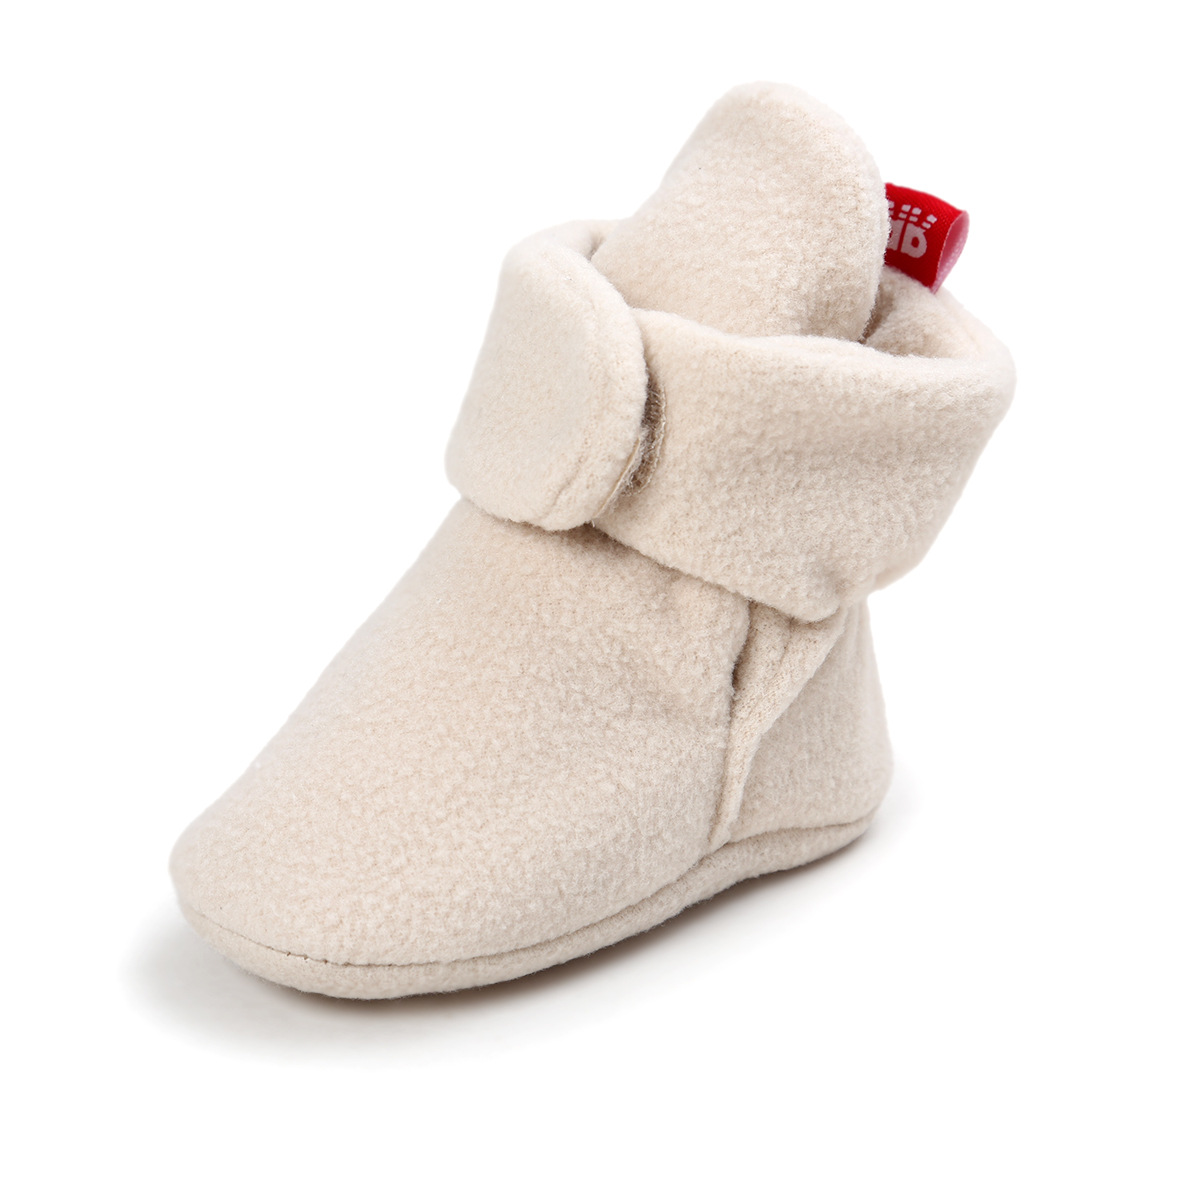 Chaussures bébé en coton - Ref 3436821 Image 42